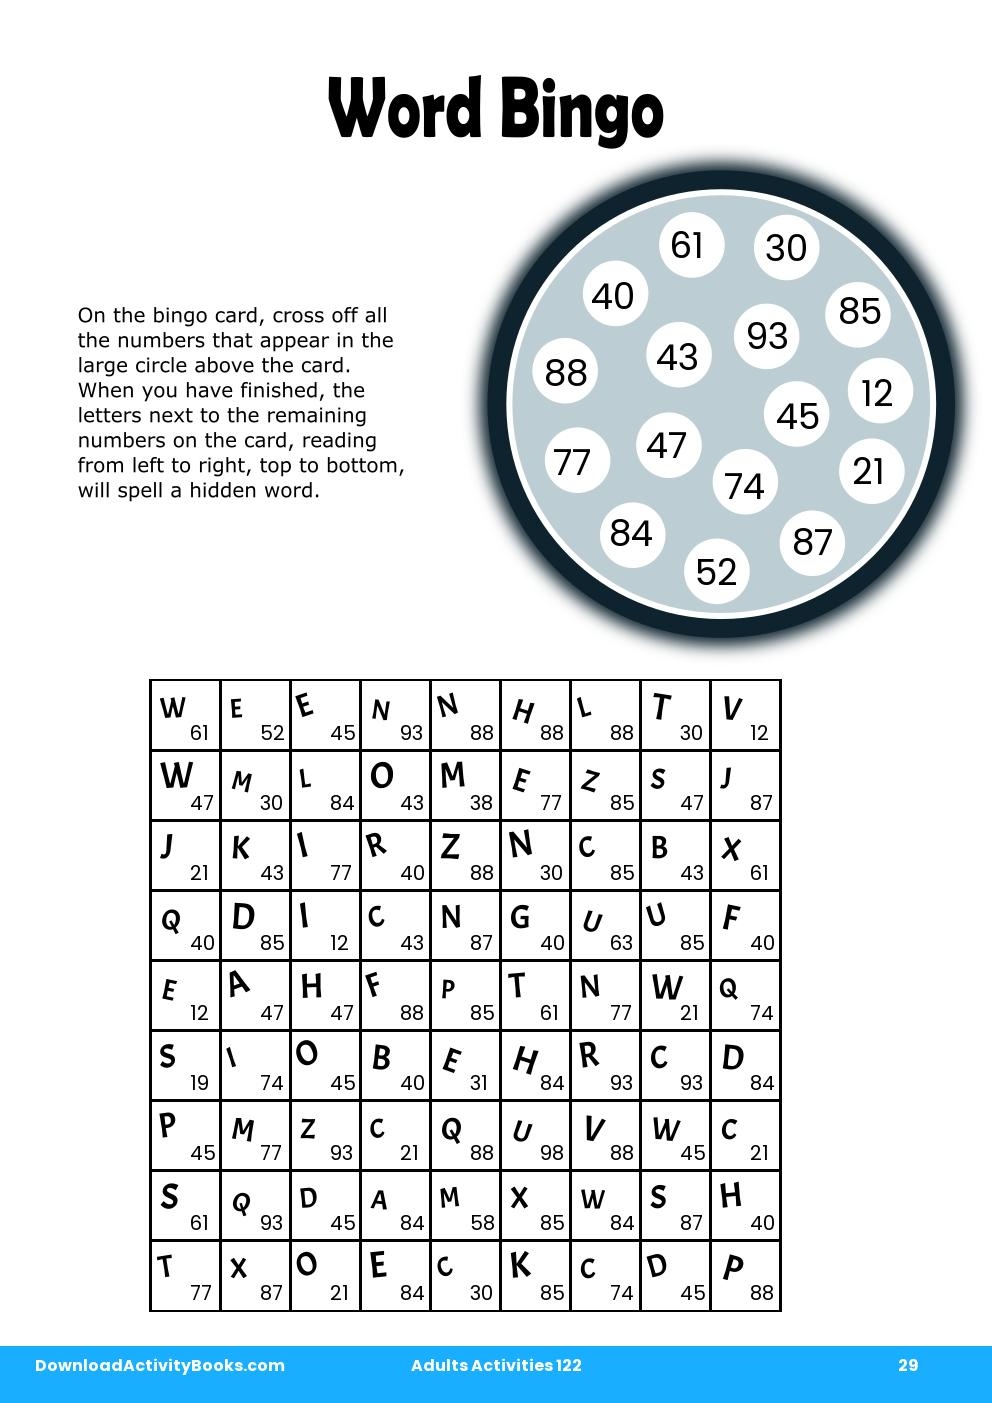 Word Bingo in Adults Activities 122